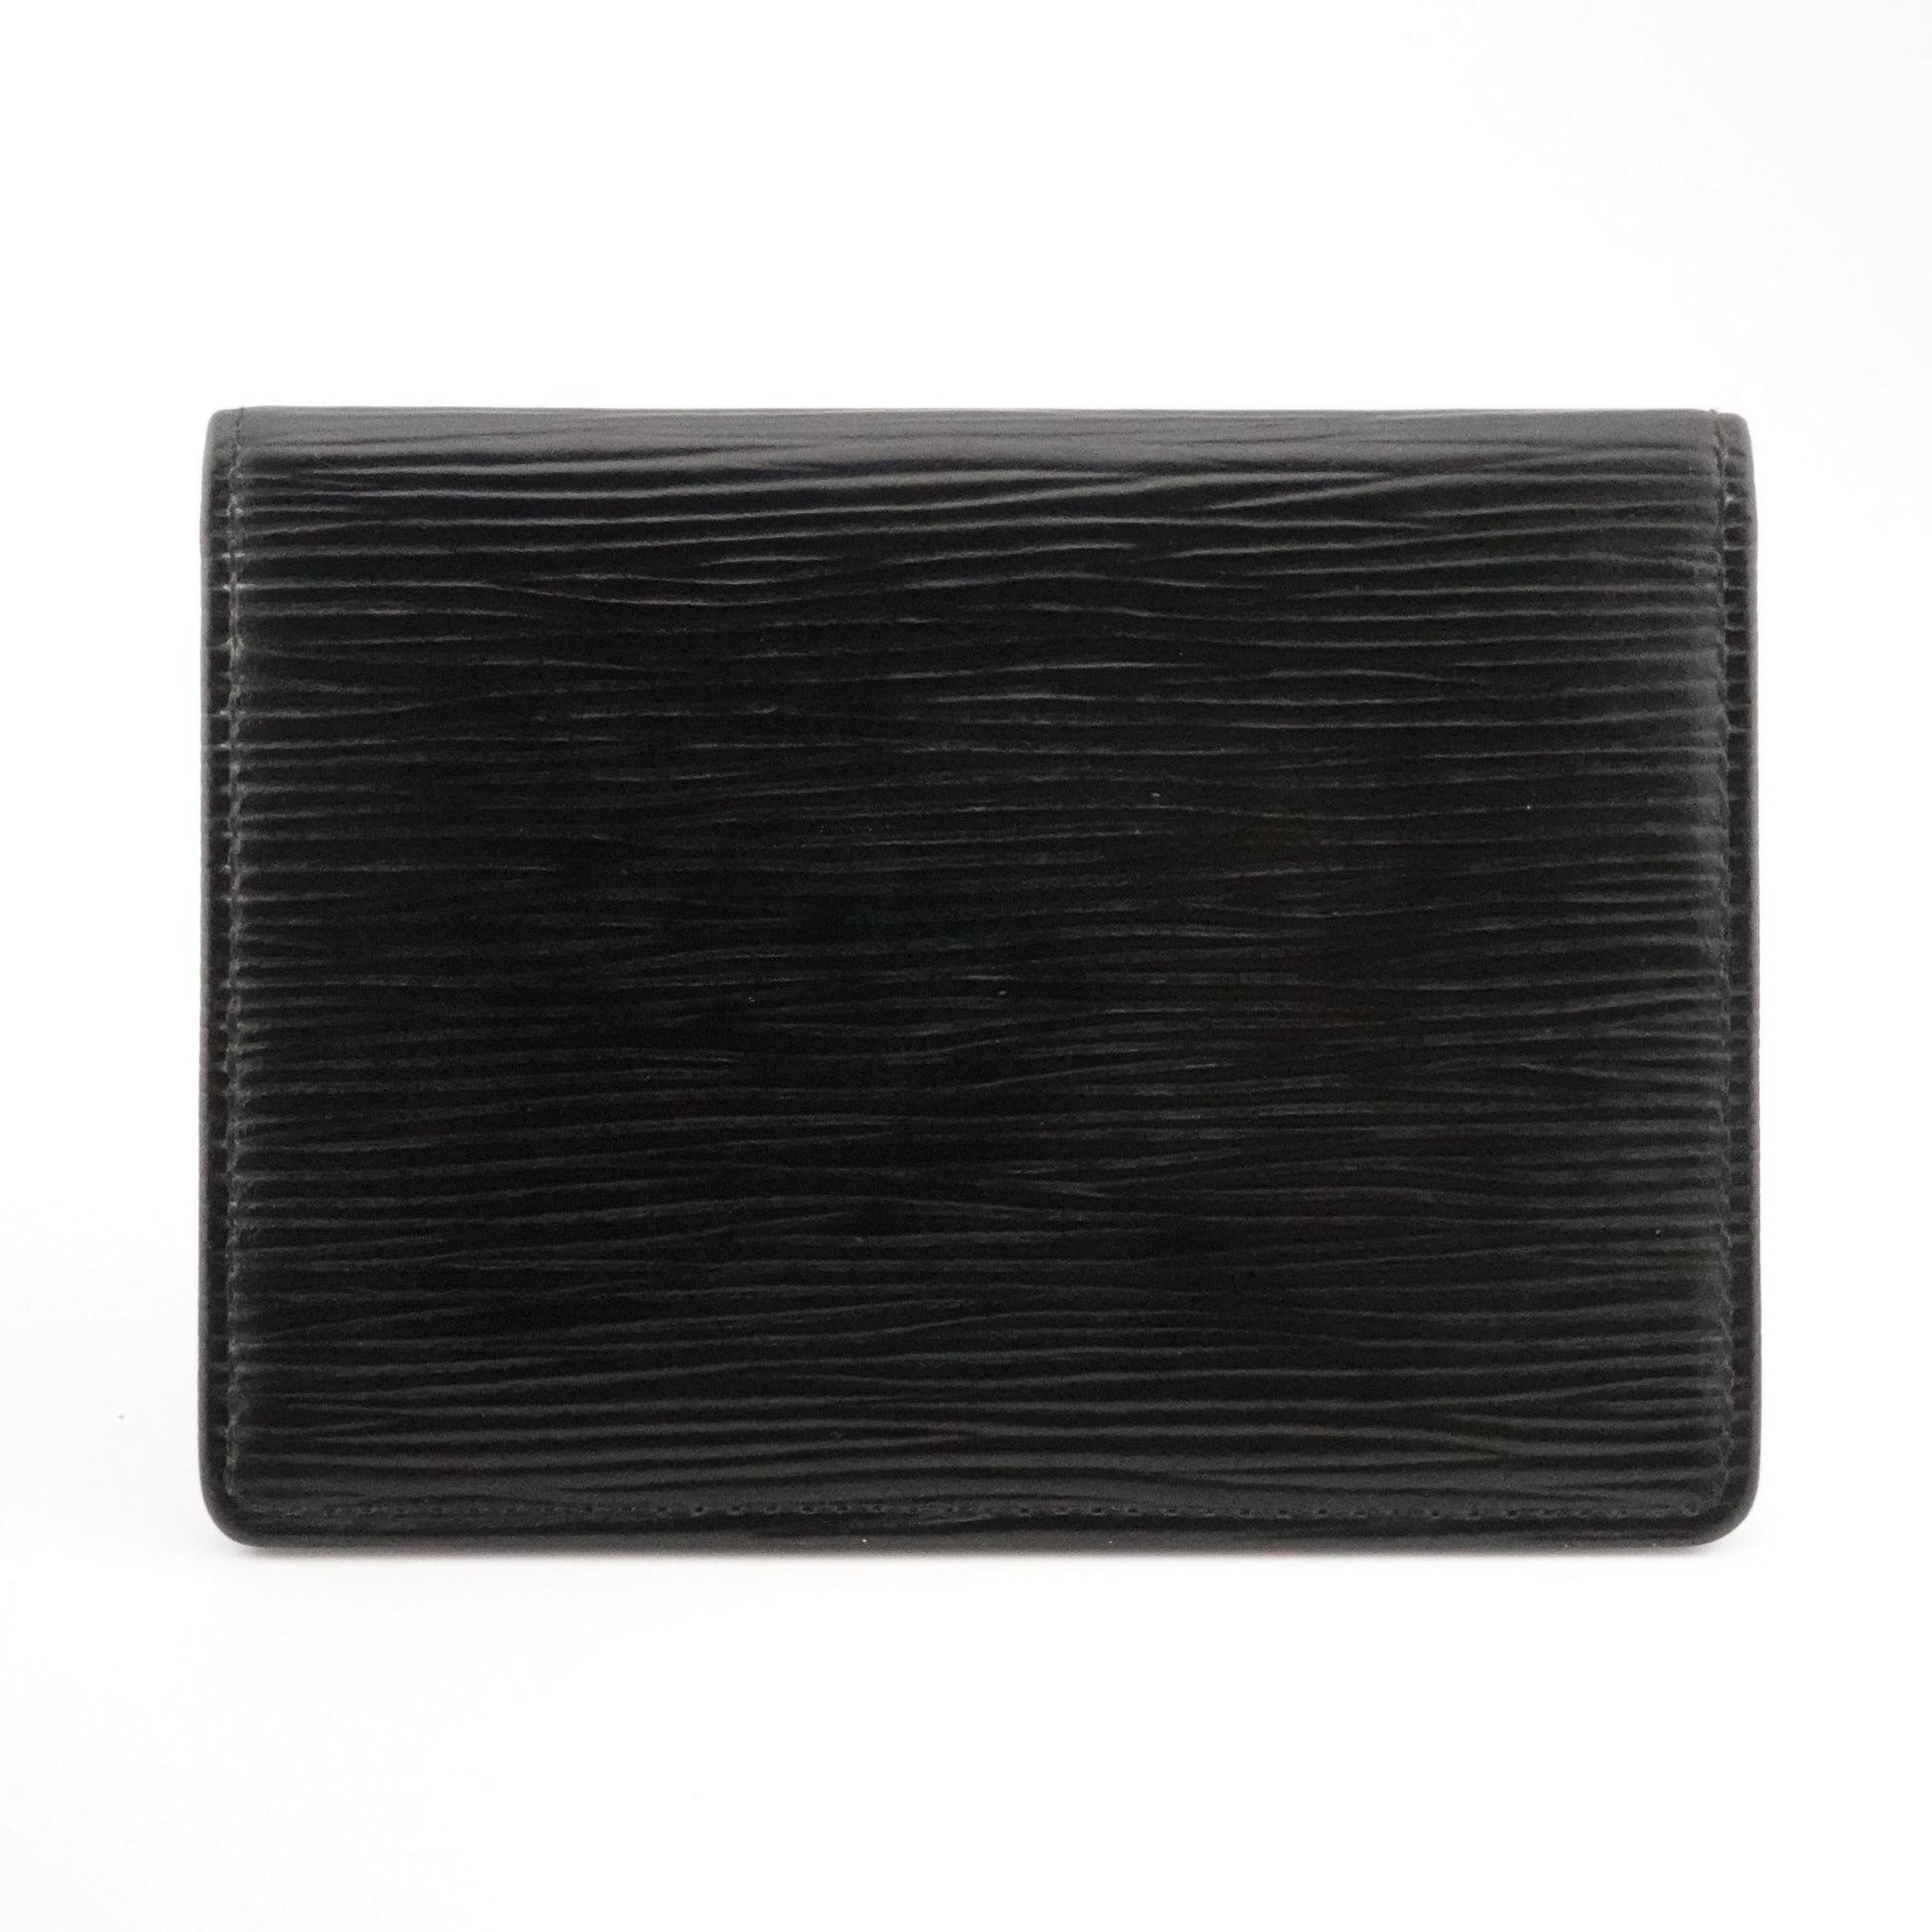 LOUIS VUITTON Epi Leather Card Case - Bag Envy